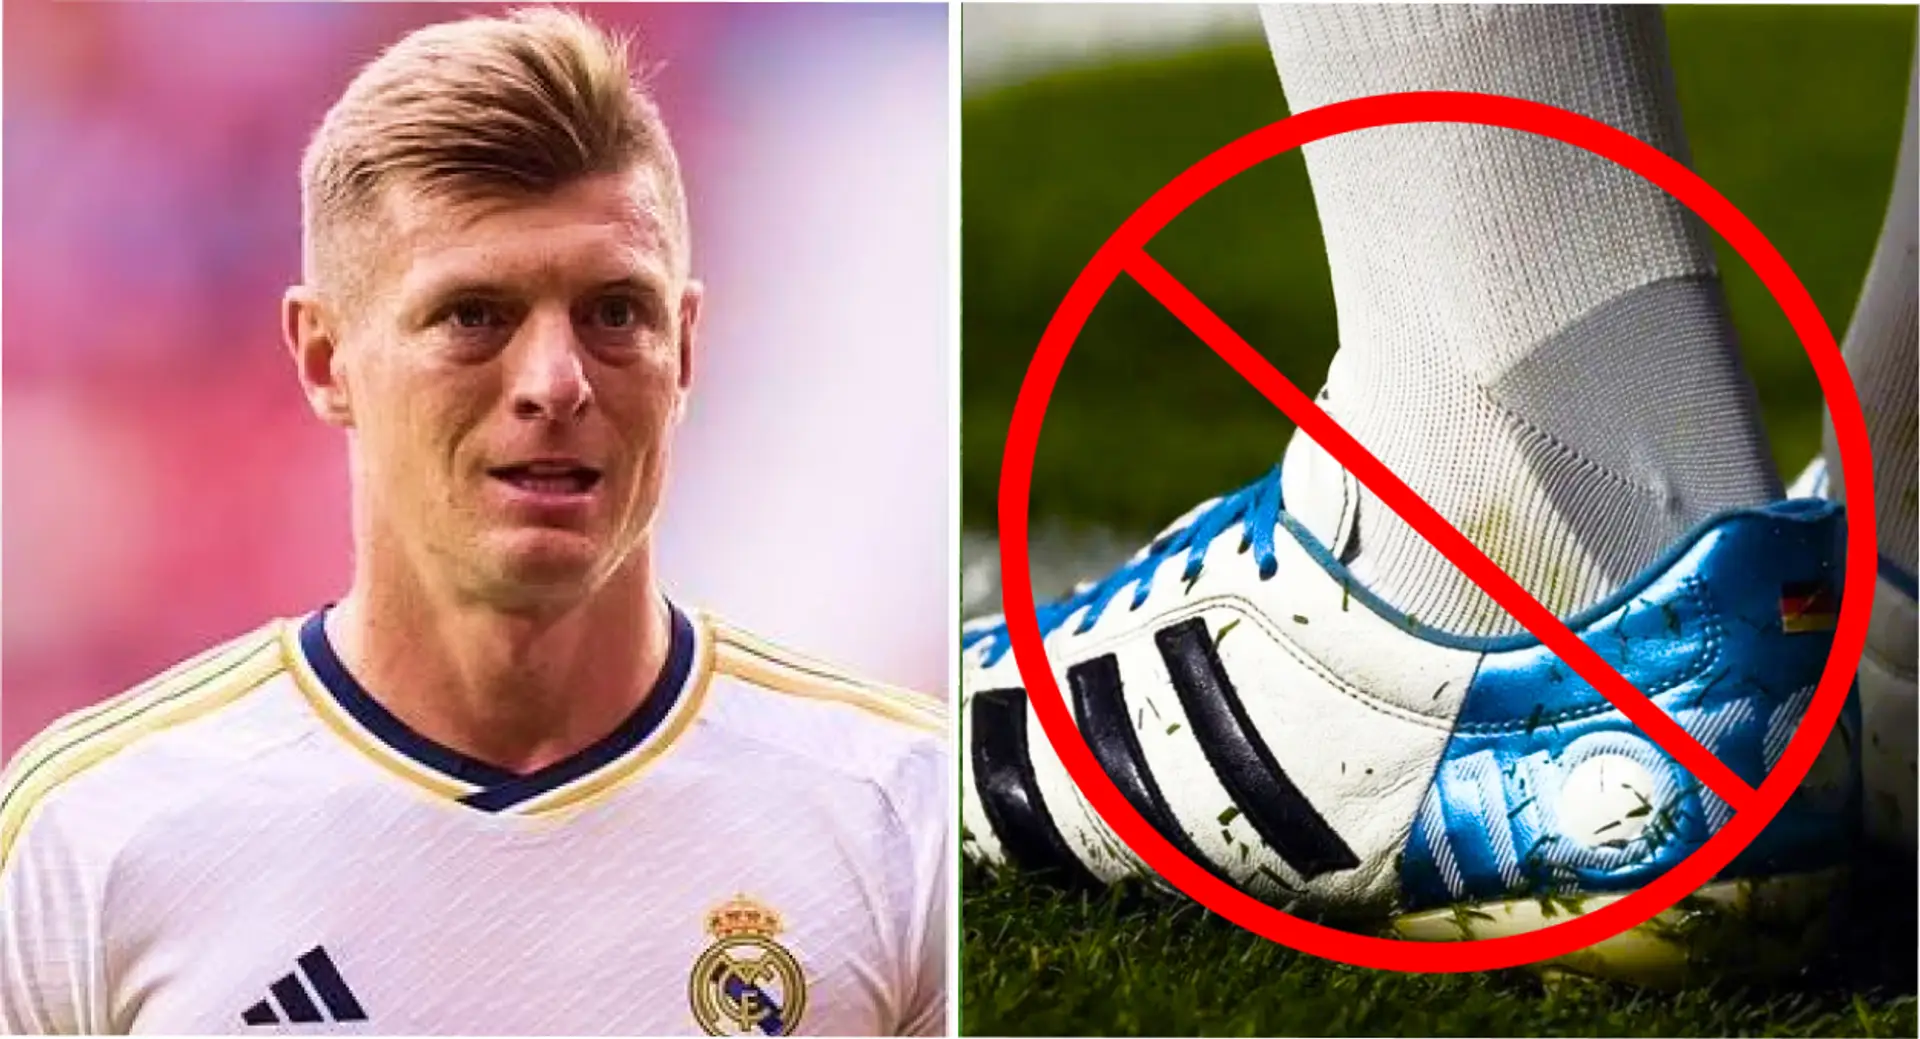 Los madridistas exigen 'arrestar a Adidas' porque Toni Kroos cambia botas de suerte usadas durante una década días antes de la ida vs Man City